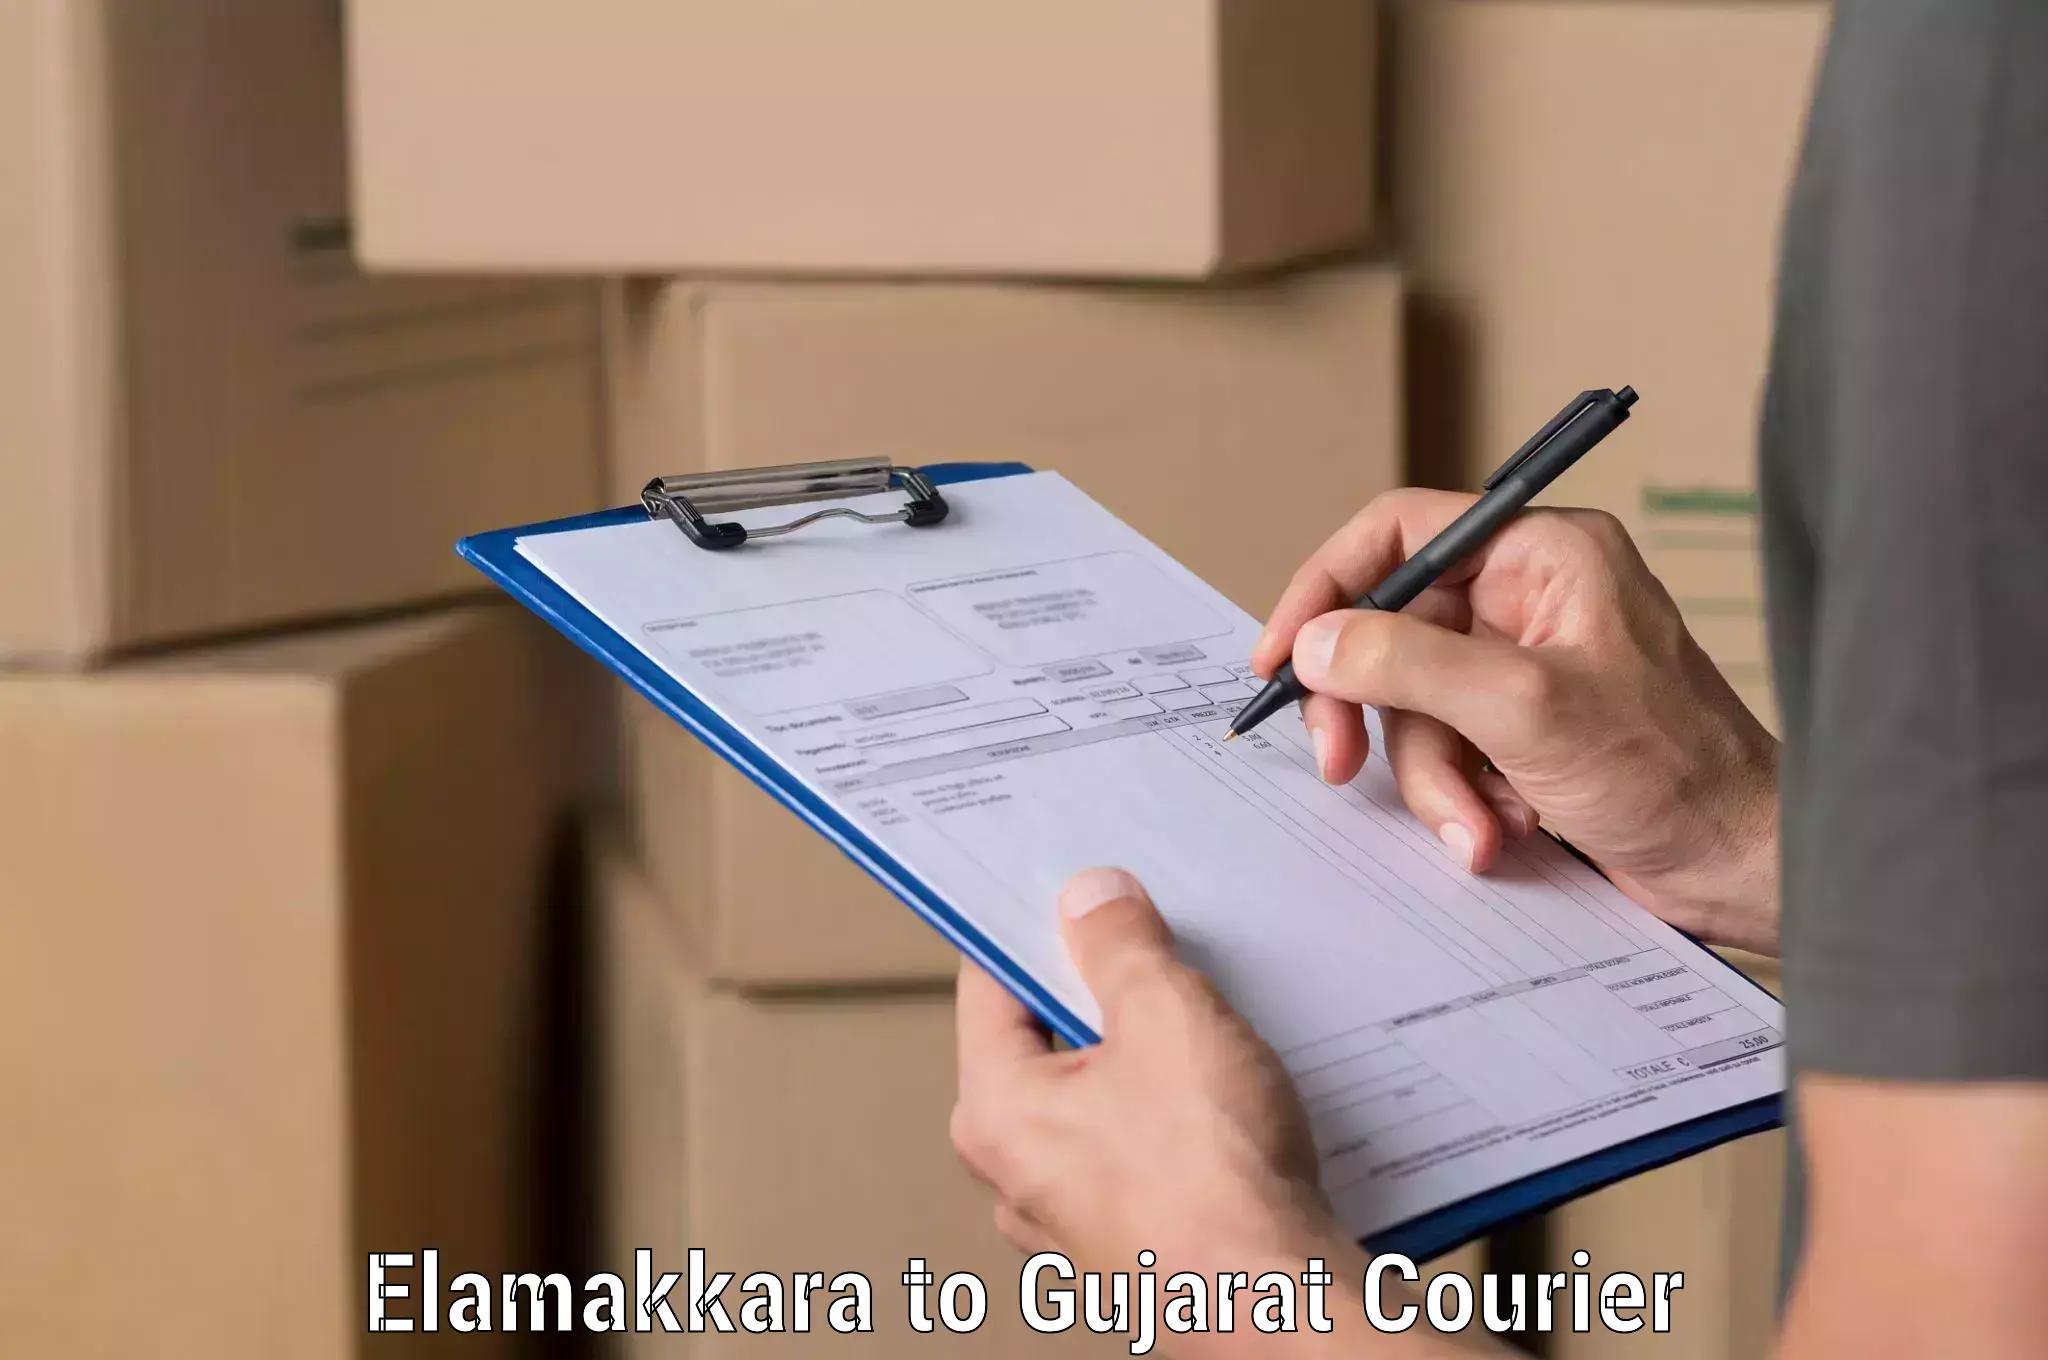 Bulk shipment Elamakkara to GIDC